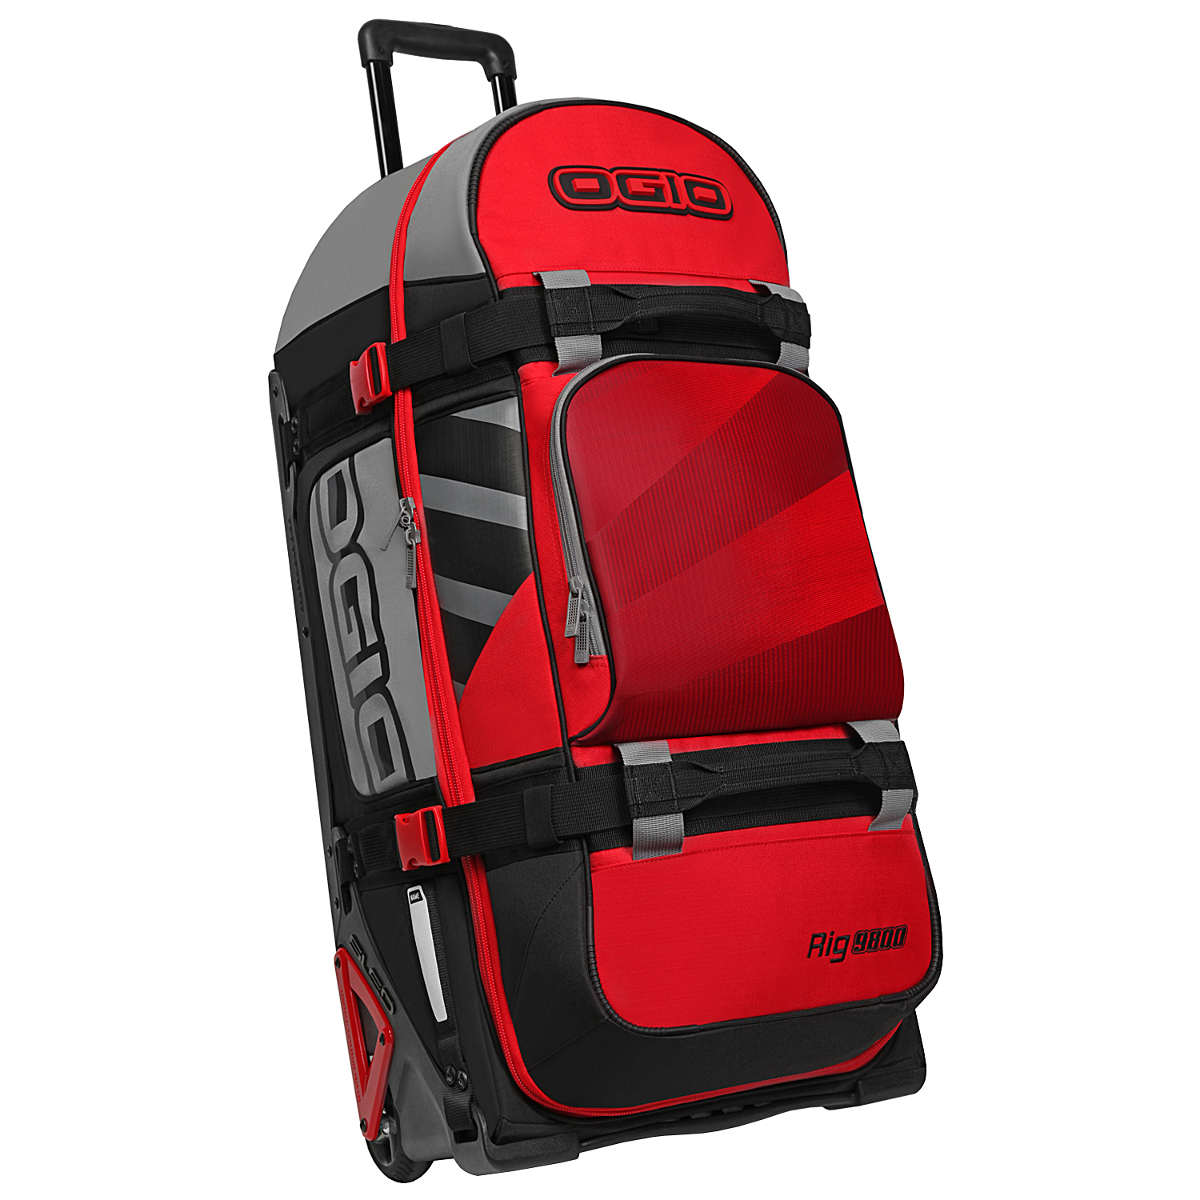 Ogio Travel Bag Rig 9800 Wheel Bag Red/Hub, 123 Liter